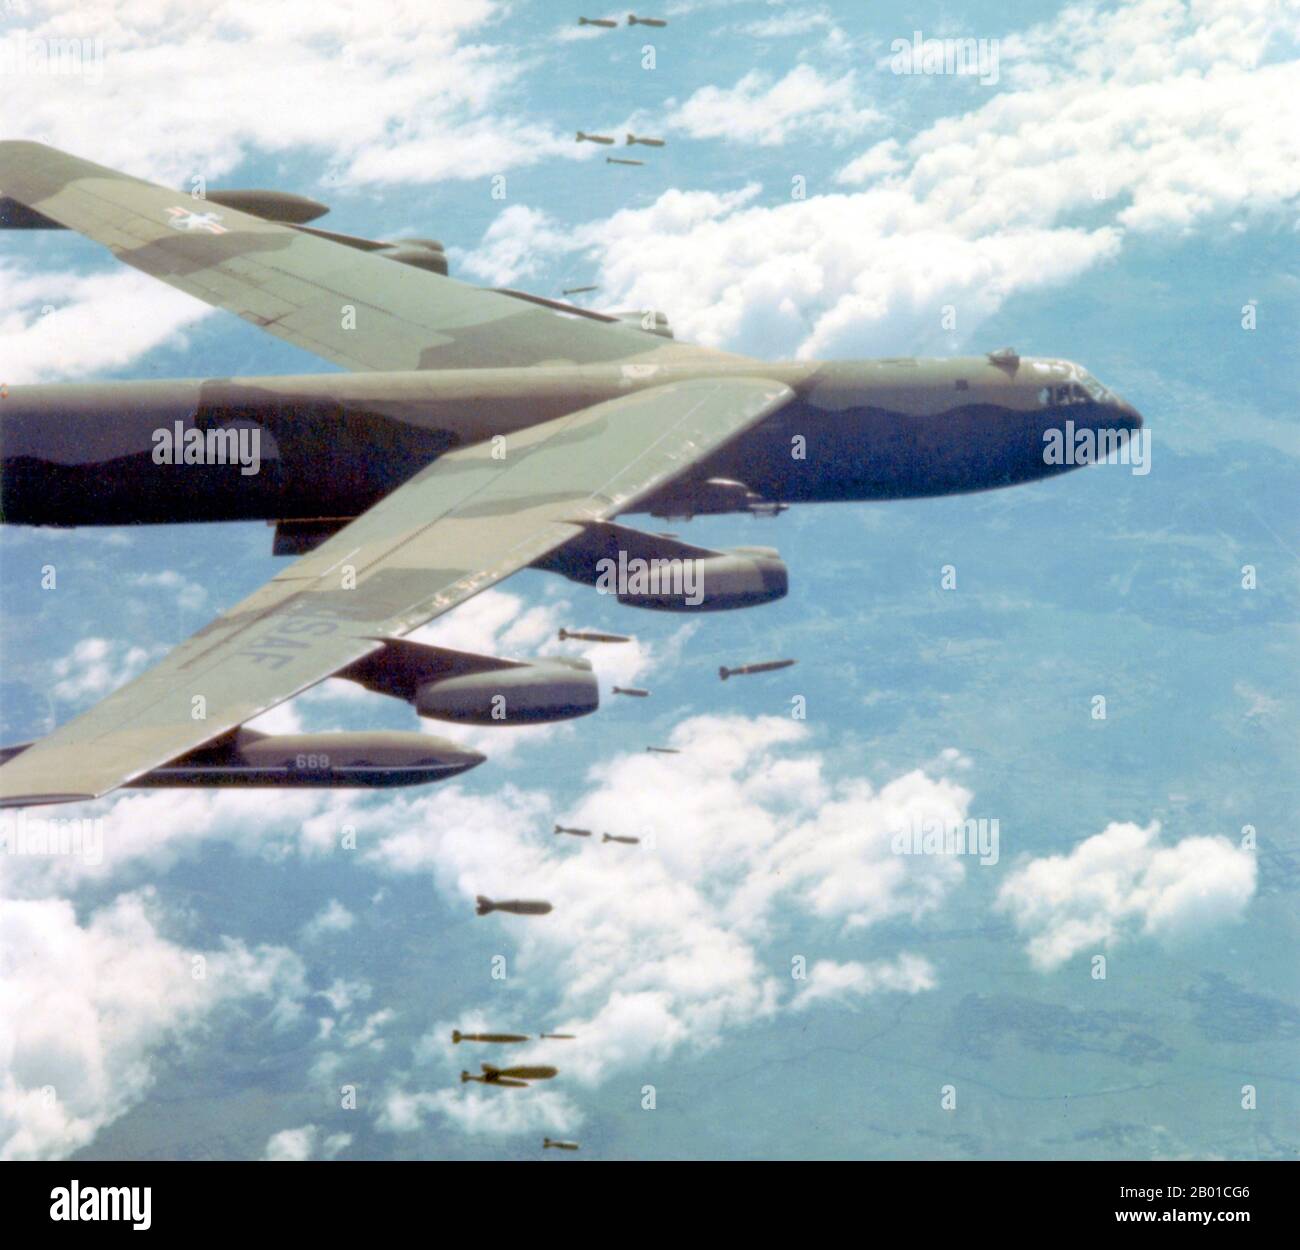 Vietnam: Eine Boeing B-52 der US-Luftwaffe wirft Bomben über Vietnam, c. 1965-1972. Dieses Flugzeug wurde während der 'Linebacker II'-Offensive am 31. Dezember 1972 von einer SA-2-Boden-Luft-Rakete über Nordvietnam getroffen und stürzte in Laos ab. Die sechsköpfige Besatzung wurde ausgeworfen, aber nur fünf wurden gerettet. Bei der Operation Linebacker II handelte es sich um eine Luftangriffskampagne der 7. US-Luftwaffe und der US Navy Task Force 77, die während der letzten Phase der Beteiligung der USA am Vietnamkrieg gegen Ziele in der Demokratischen Republik Vietnam (Nordvietnam) durchgeführt wurde. Stockfoto